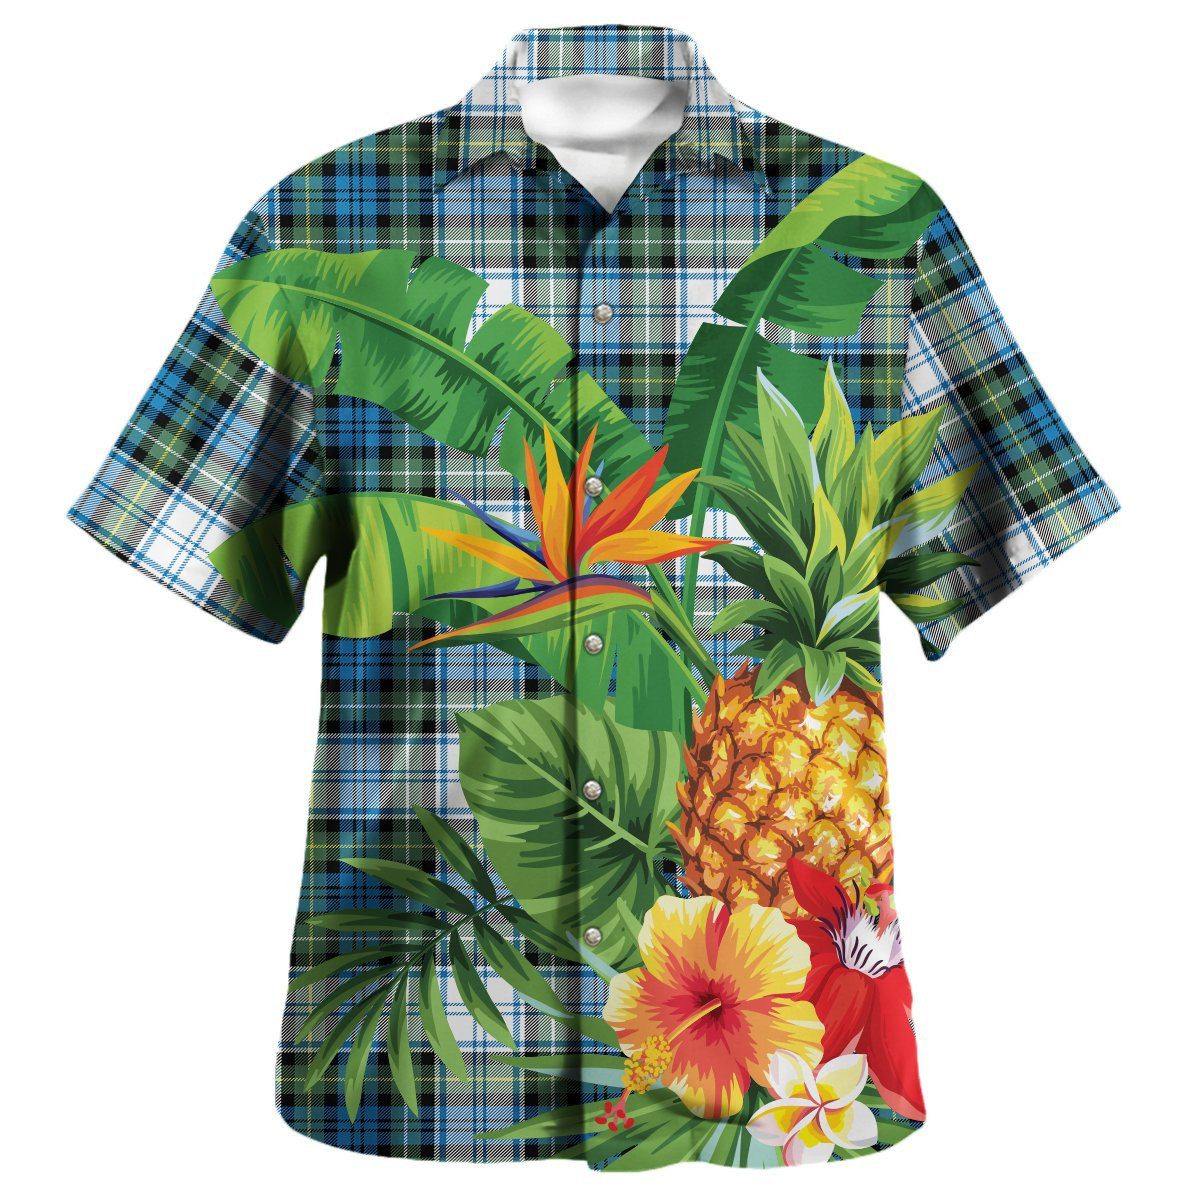 Campbell Dress Ancient Tartan Aloha Shirt version 2